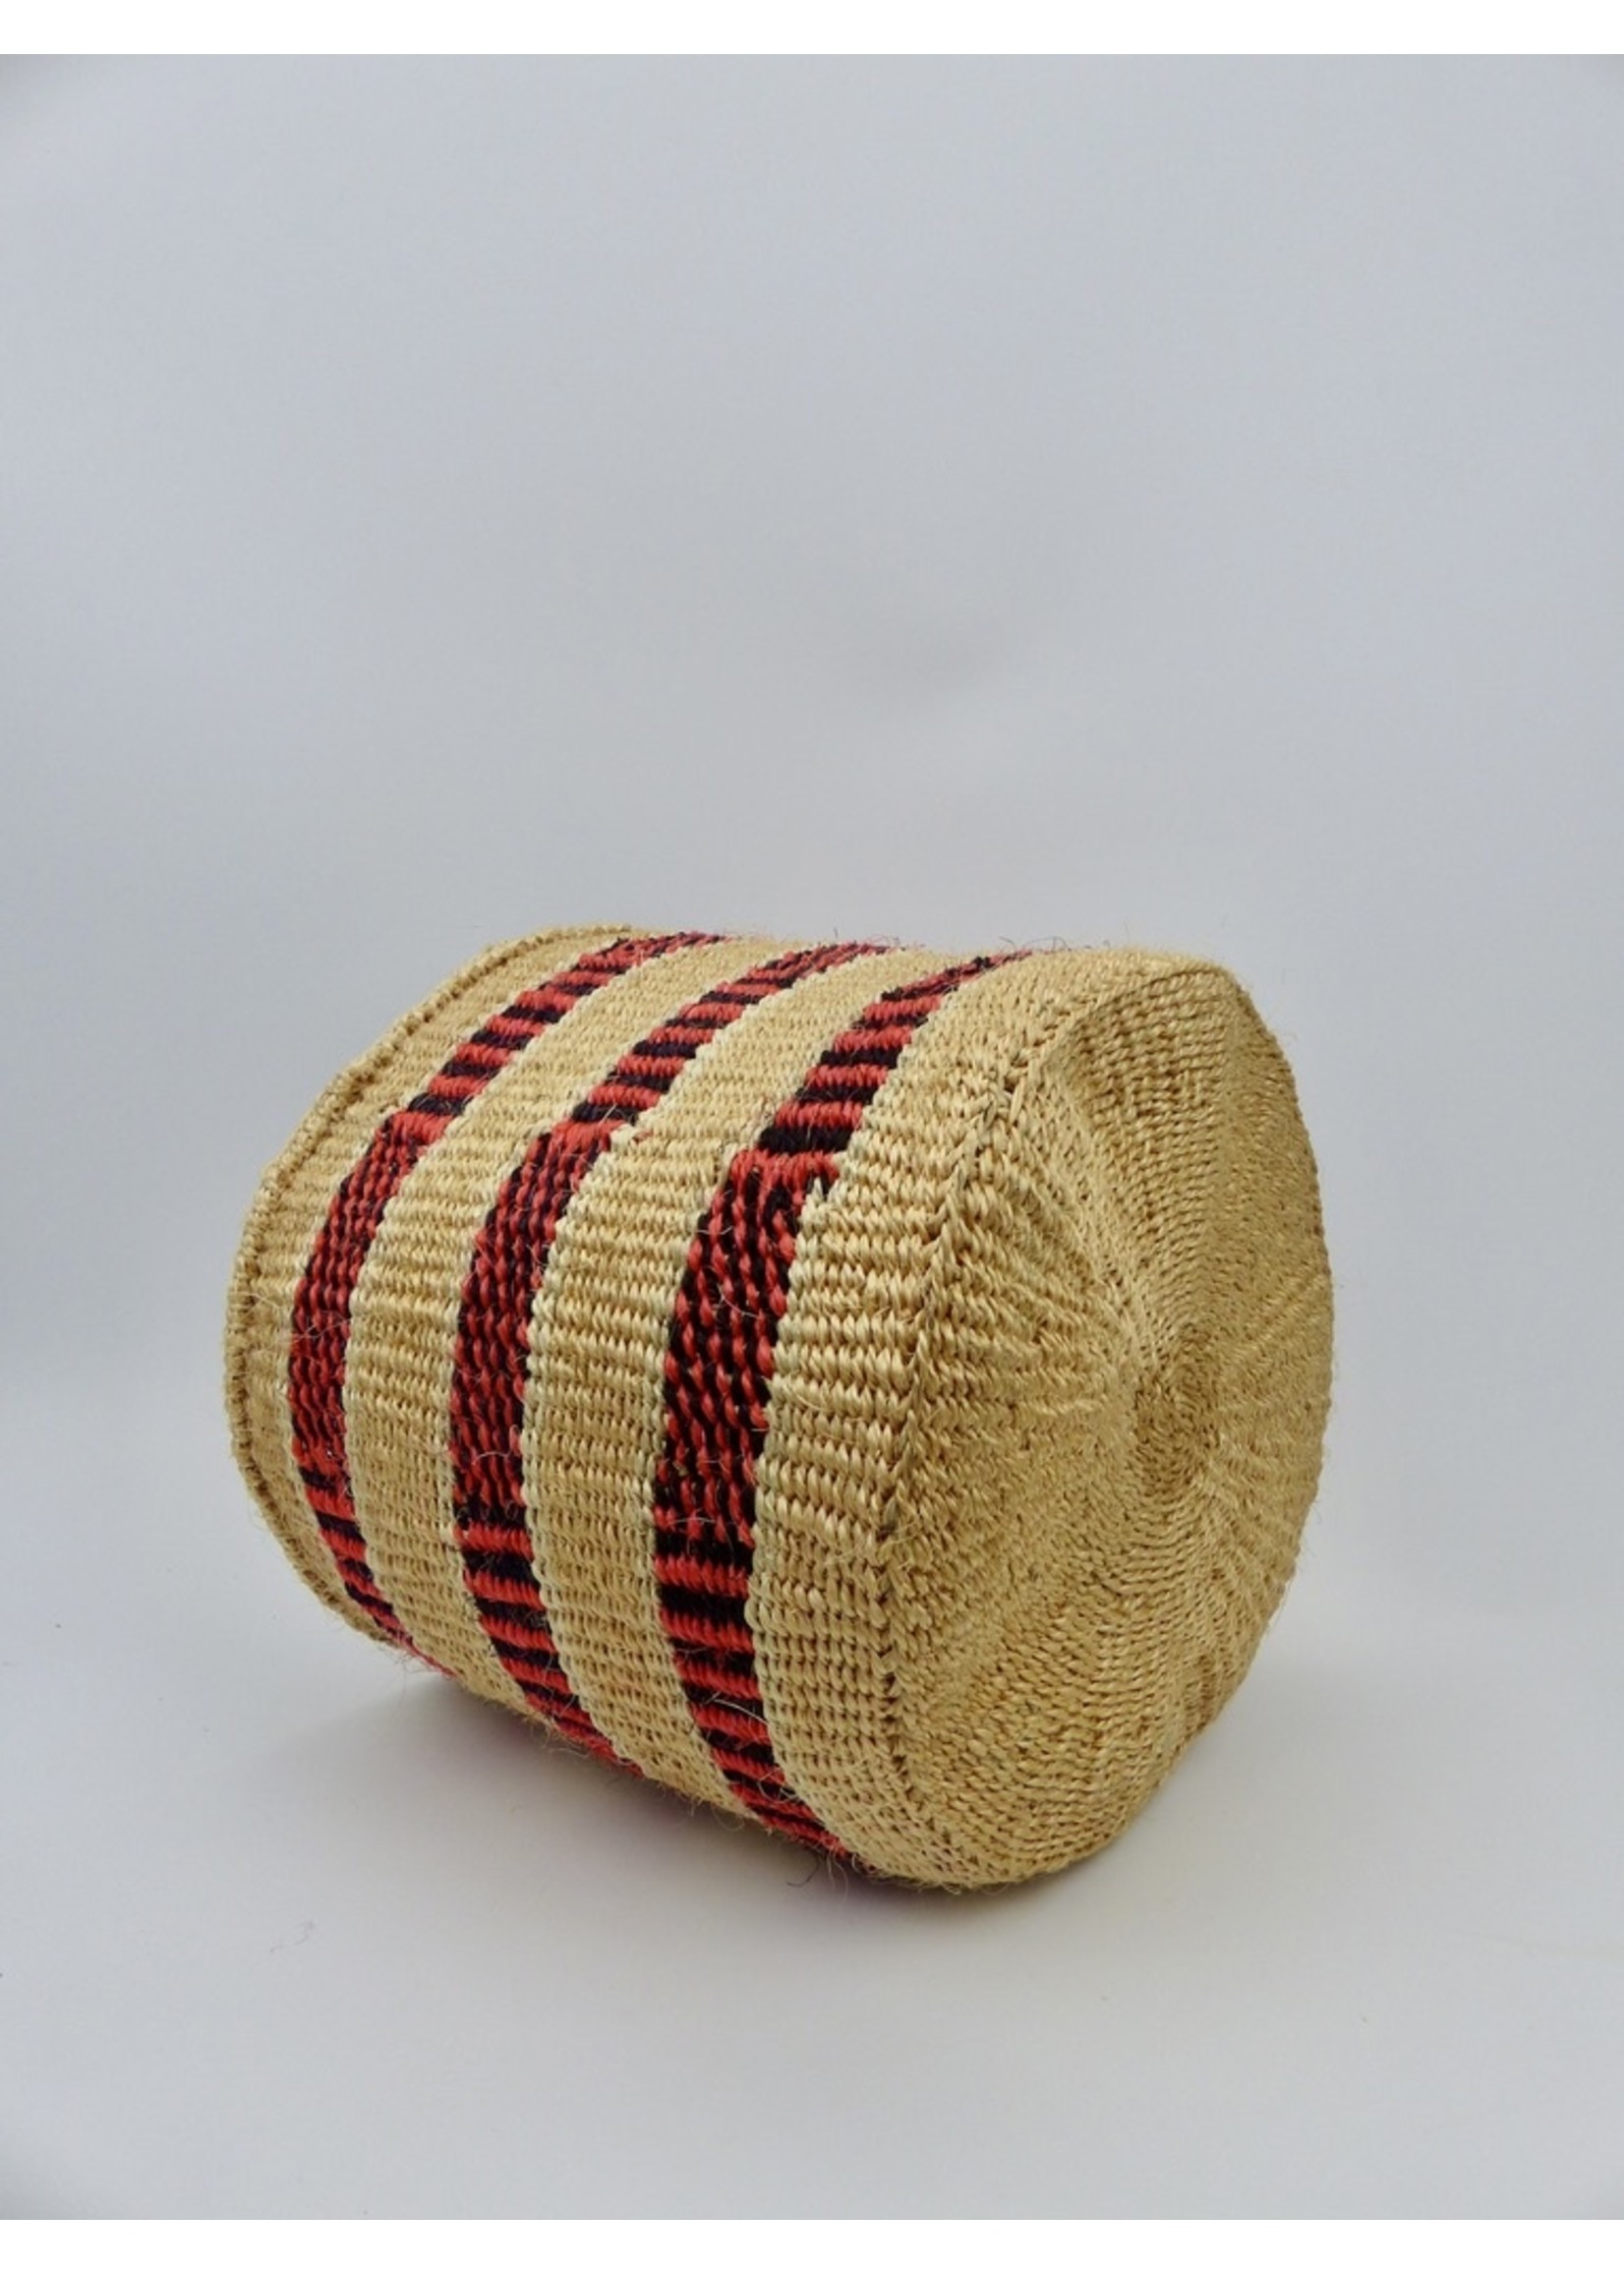 Hadithi Hadithi Basket M - Red & brown alternating patterns by Joyce Wambua